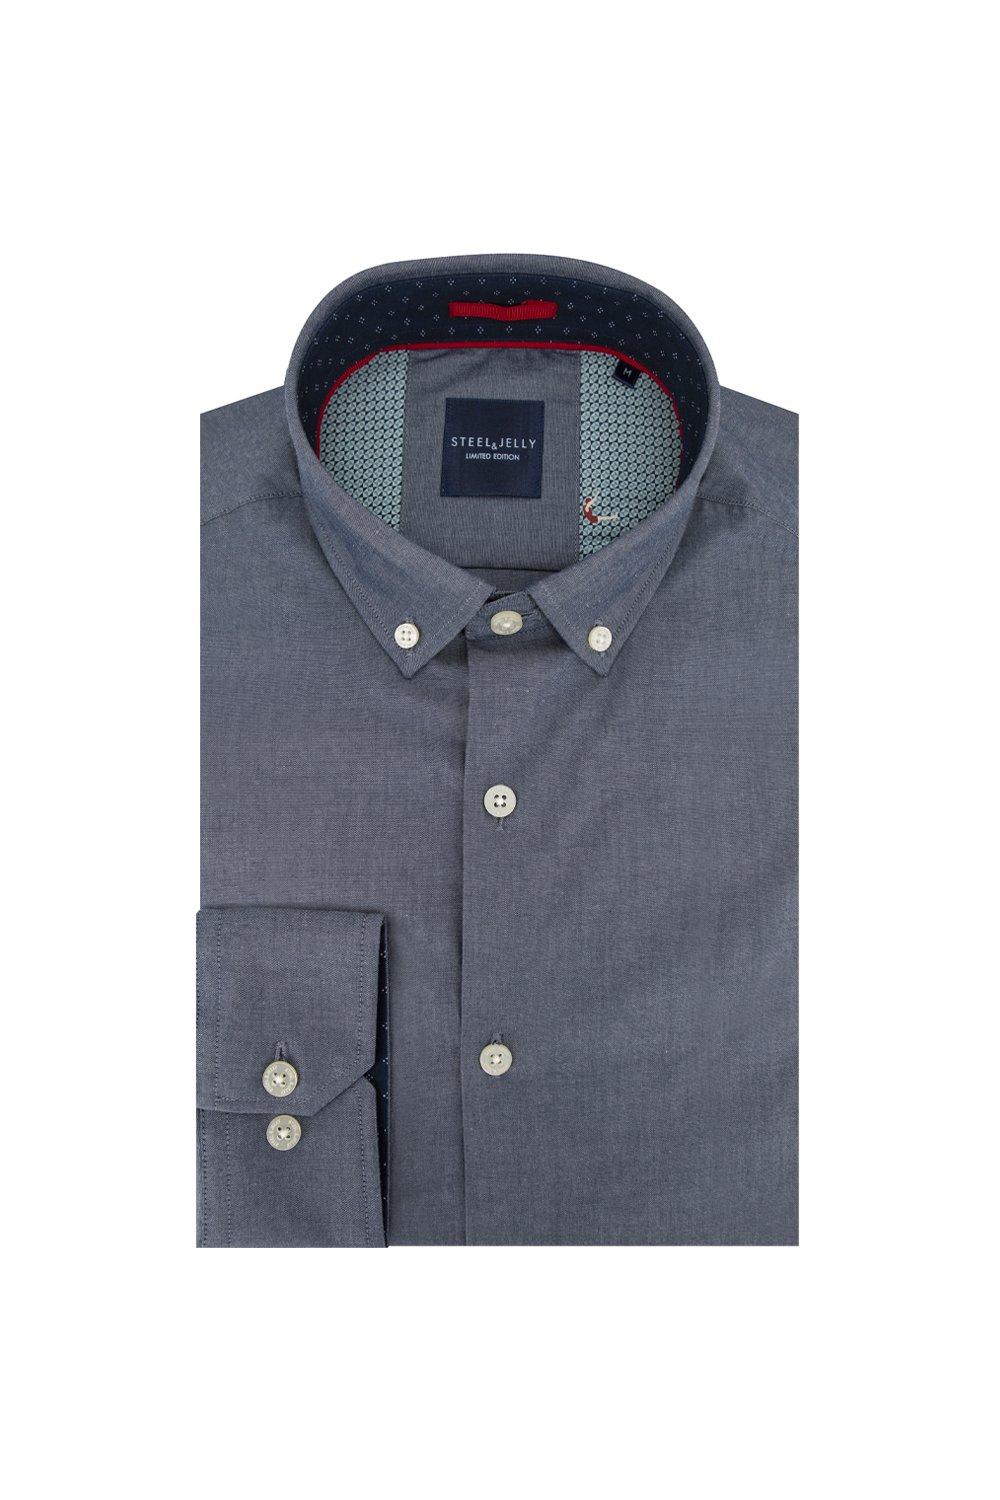 цена Рубашка узкого кроя из шамбре, ограниченная серия Steel & Jelly, темно-синий